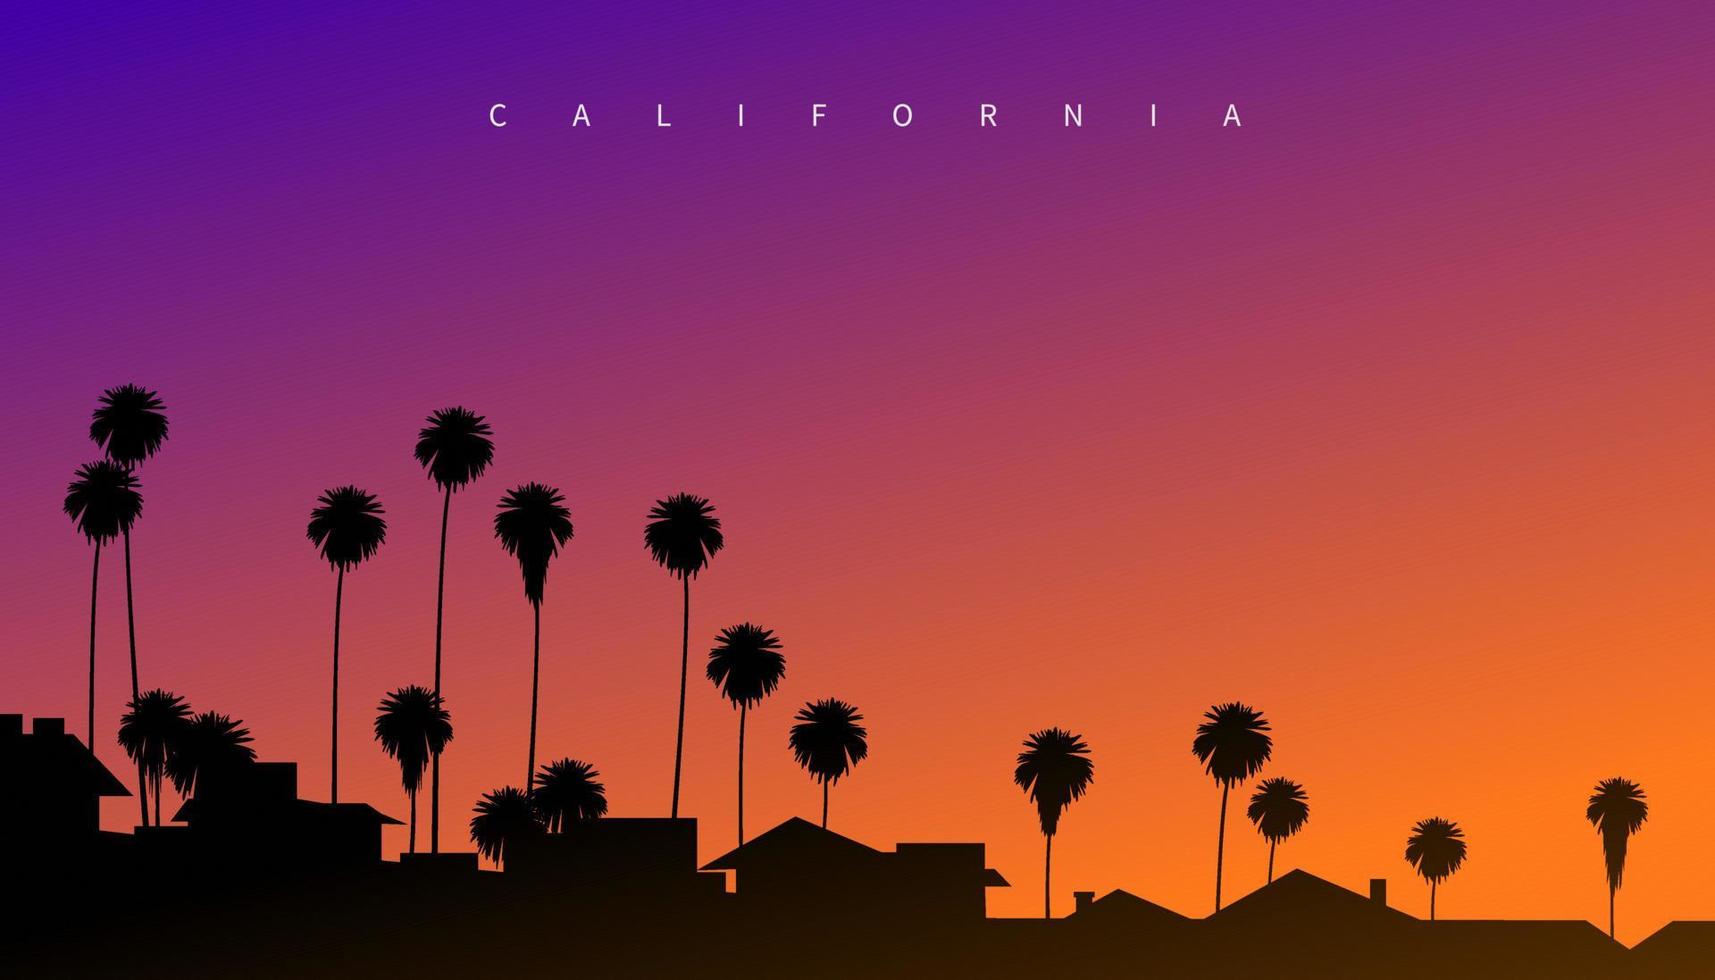 wunderschöner sonnenuntergang irgendwo in kalifornien, usa. kreative Vektorgrafik im Postkartenstil mit Abendhimmel, Palmen und Villensilhouette im Vordergrund vektor